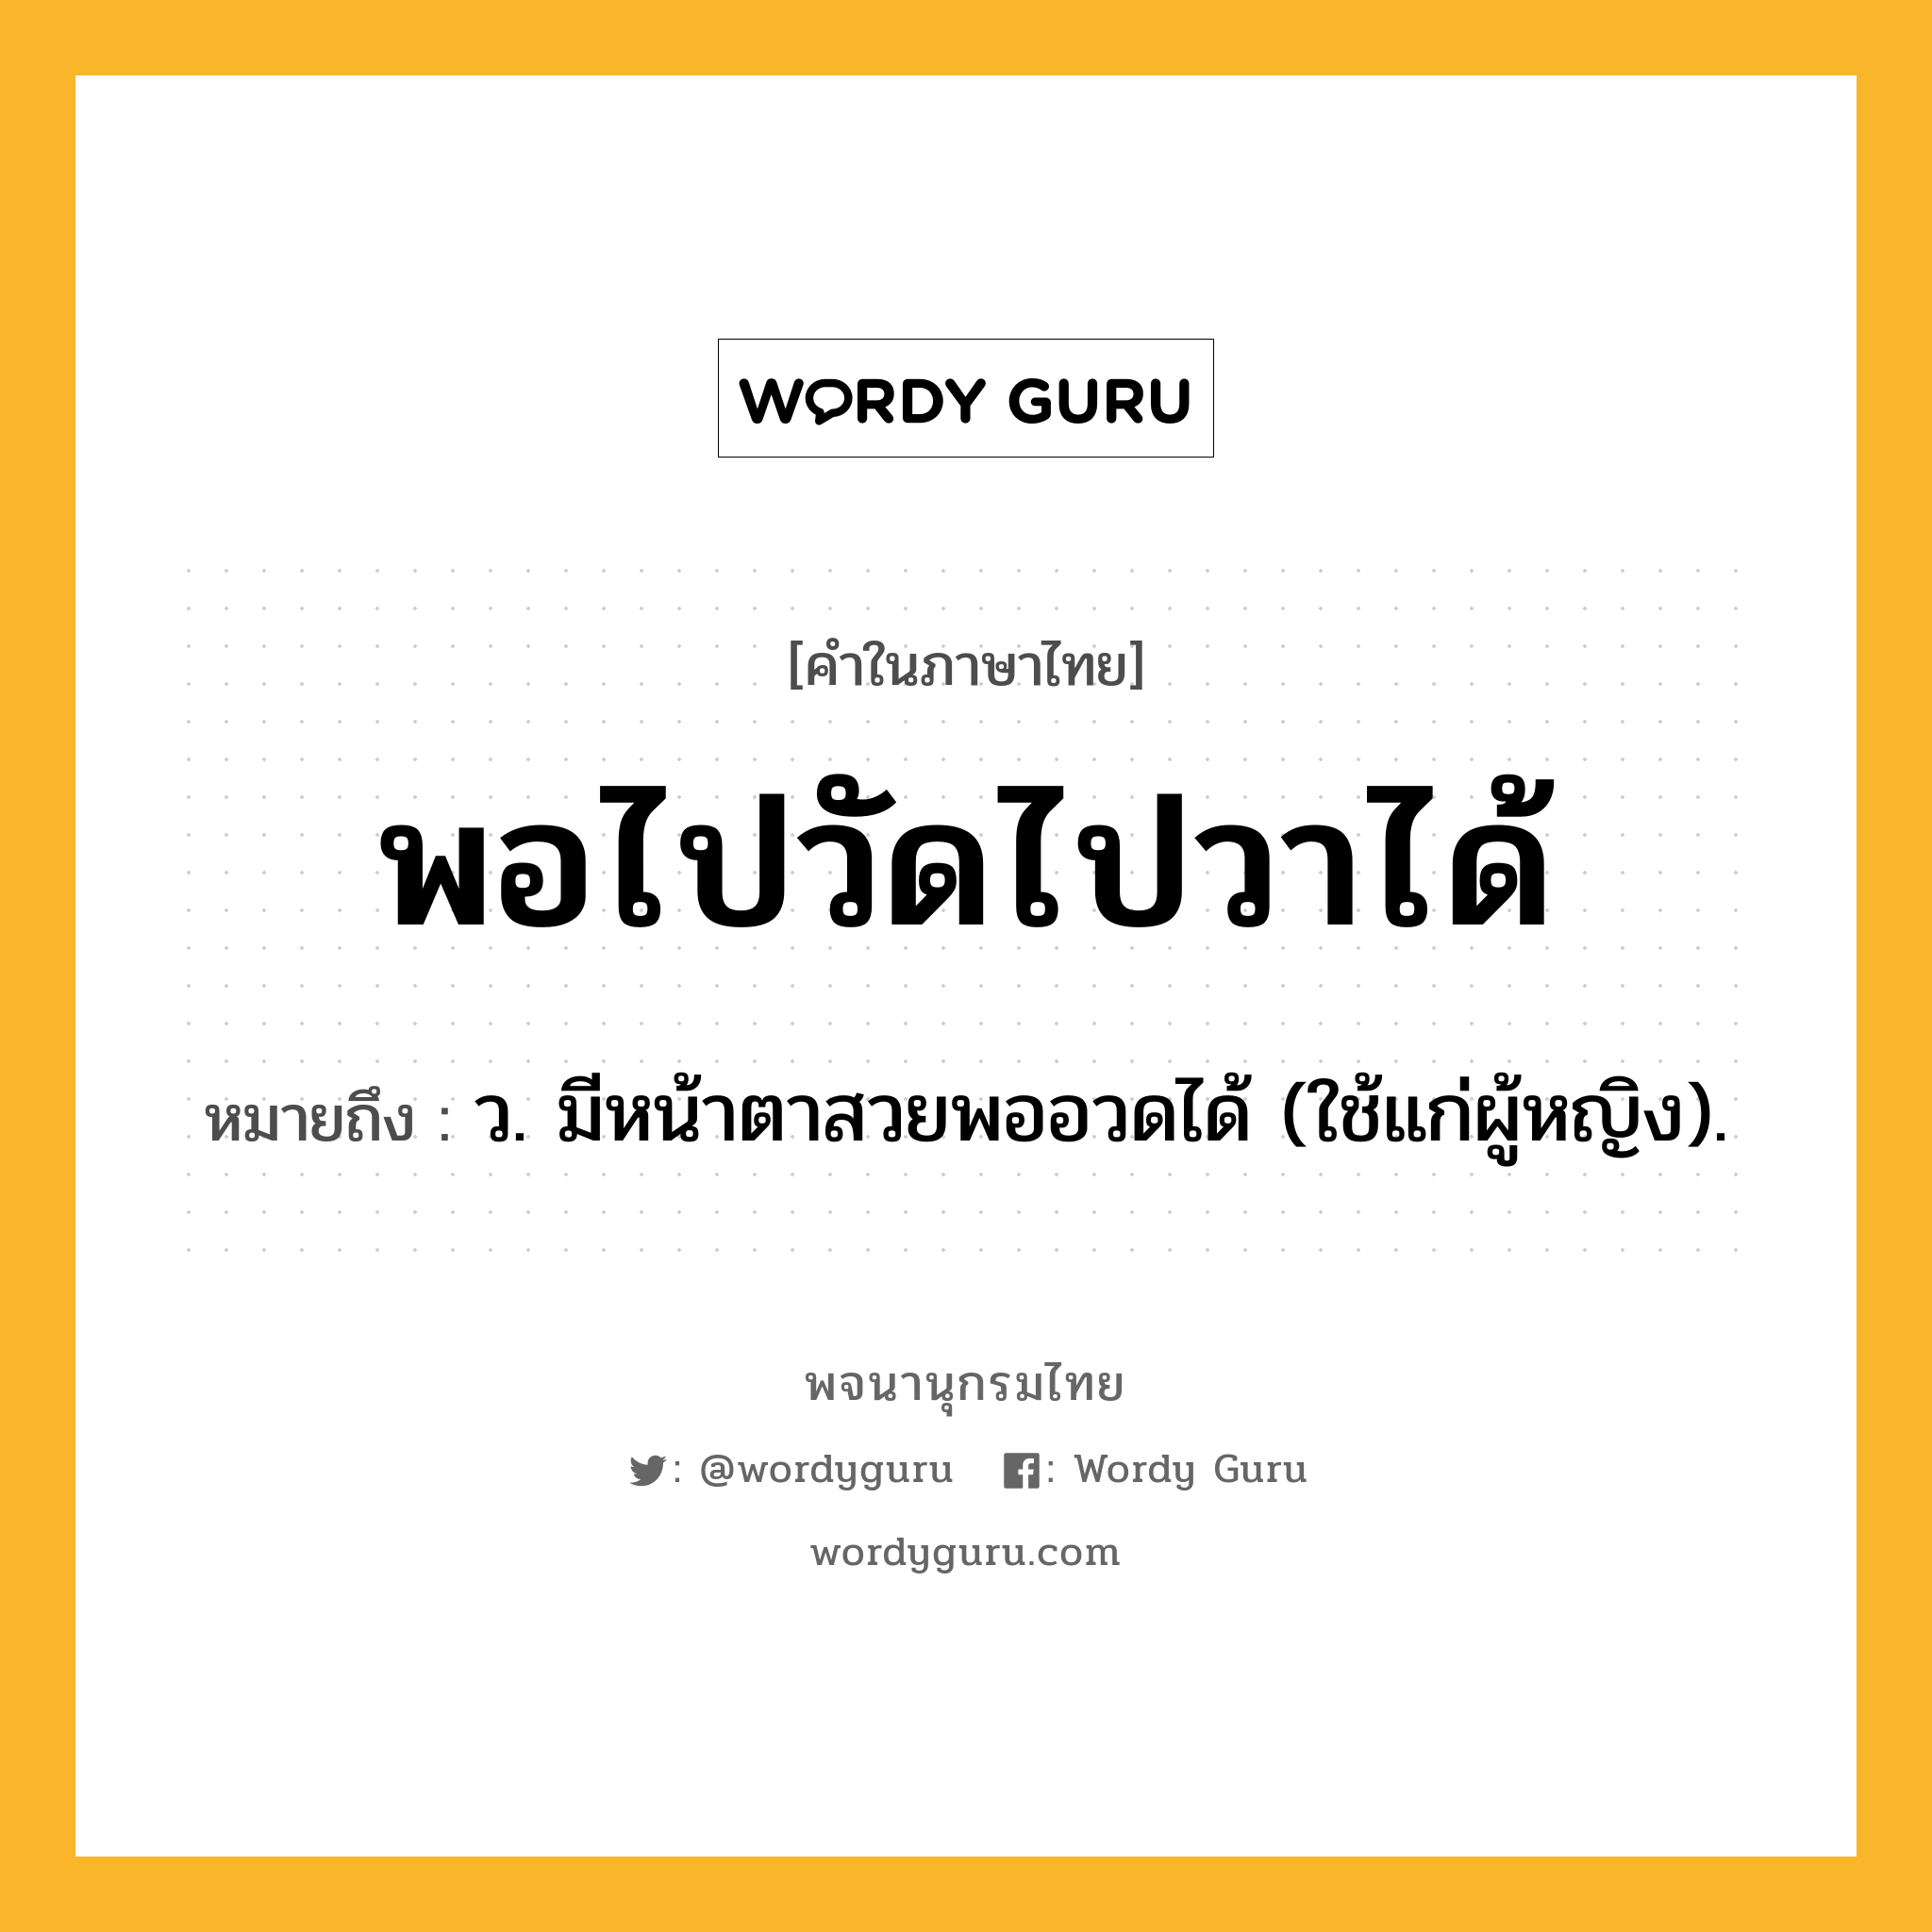 พอไปวัดไปวาได้ หมายถึงอะไร?, คำในภาษาไทย พอไปวัดไปวาได้ หมายถึง ว. มีหน้าตาสวยพออวดได้ (ใช้แก่ผู้หญิง).